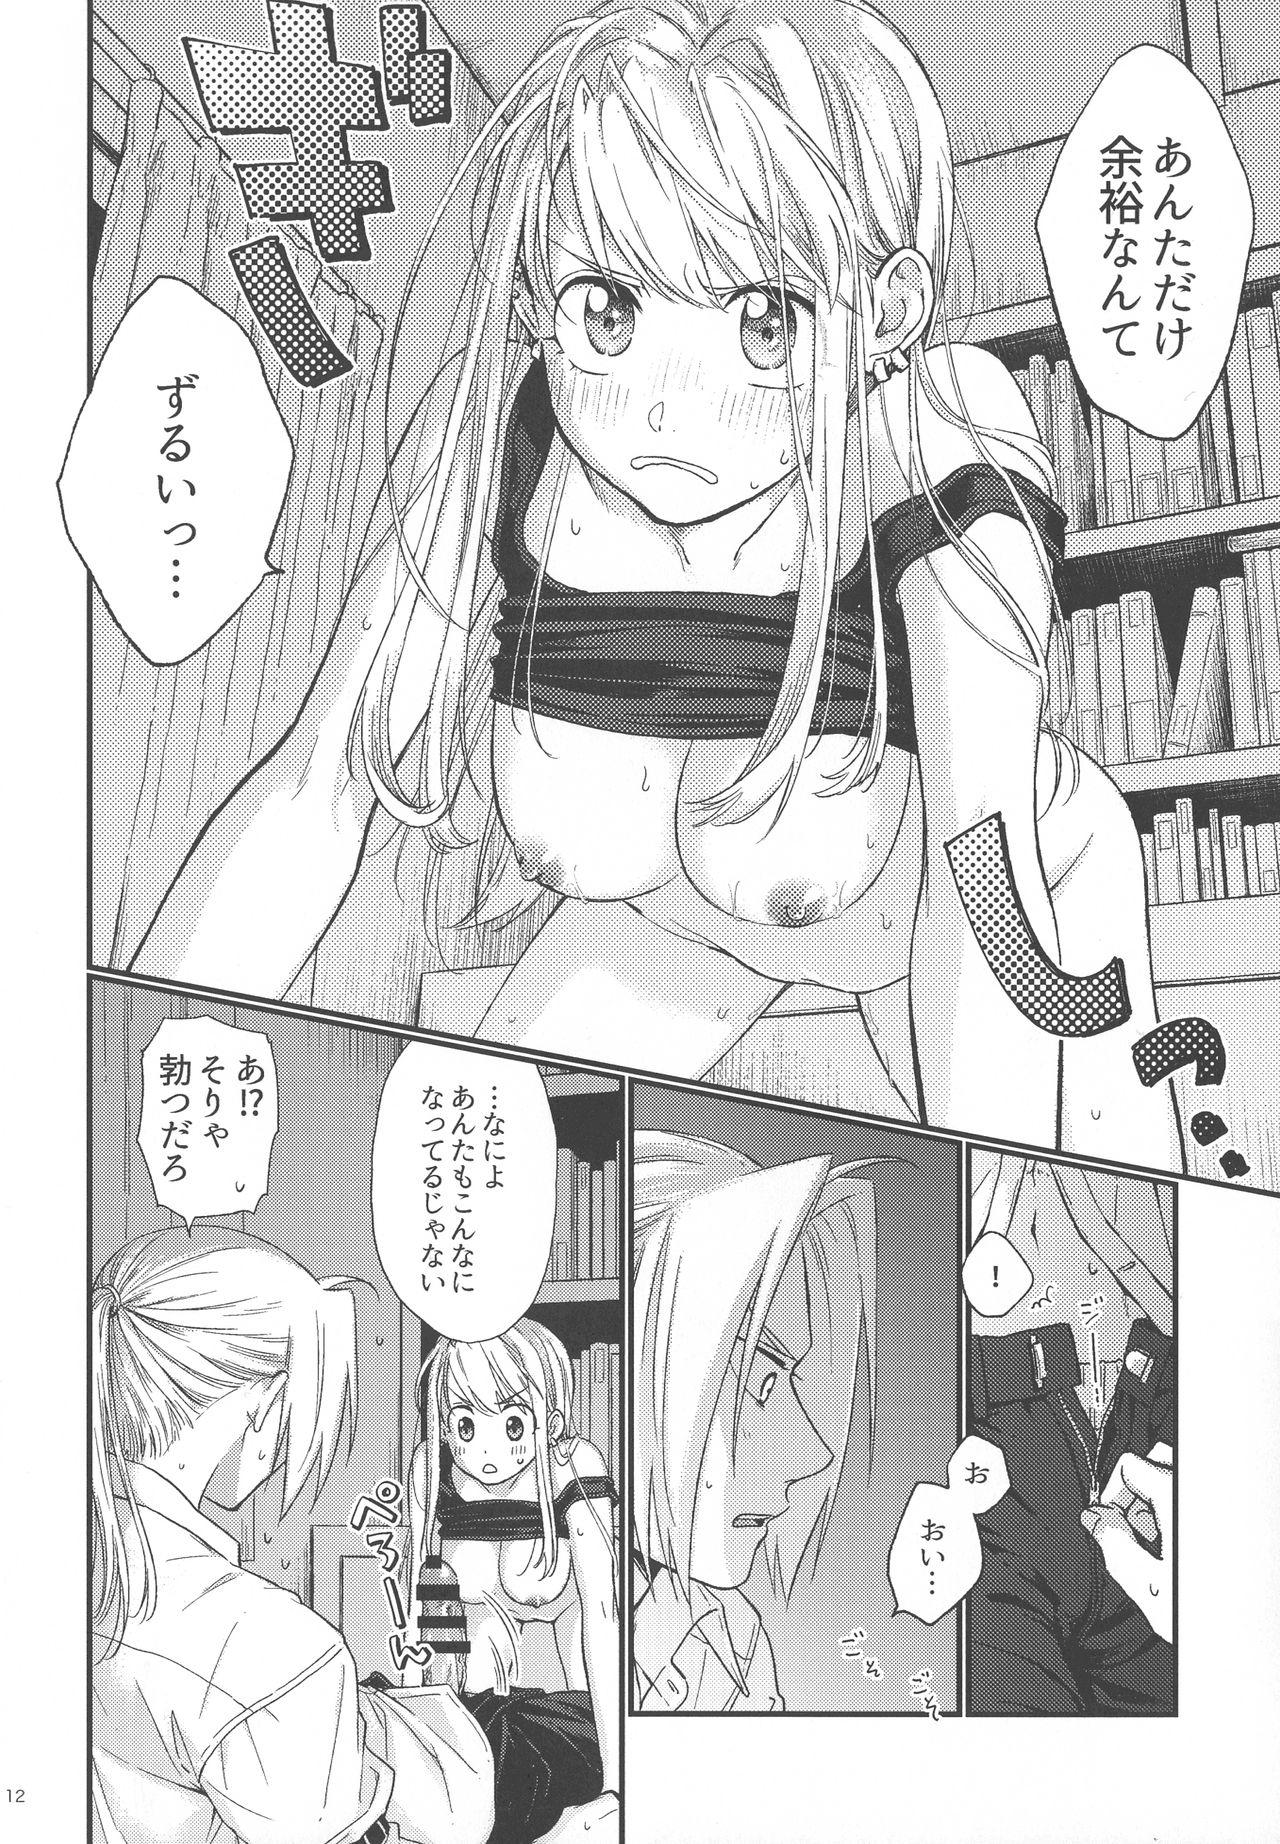 Ass To Mouth Yoyuu ga nai no wa - Fullmetal alchemist | hagane no renkinjutsushi Barely 18 Porn - Page 13